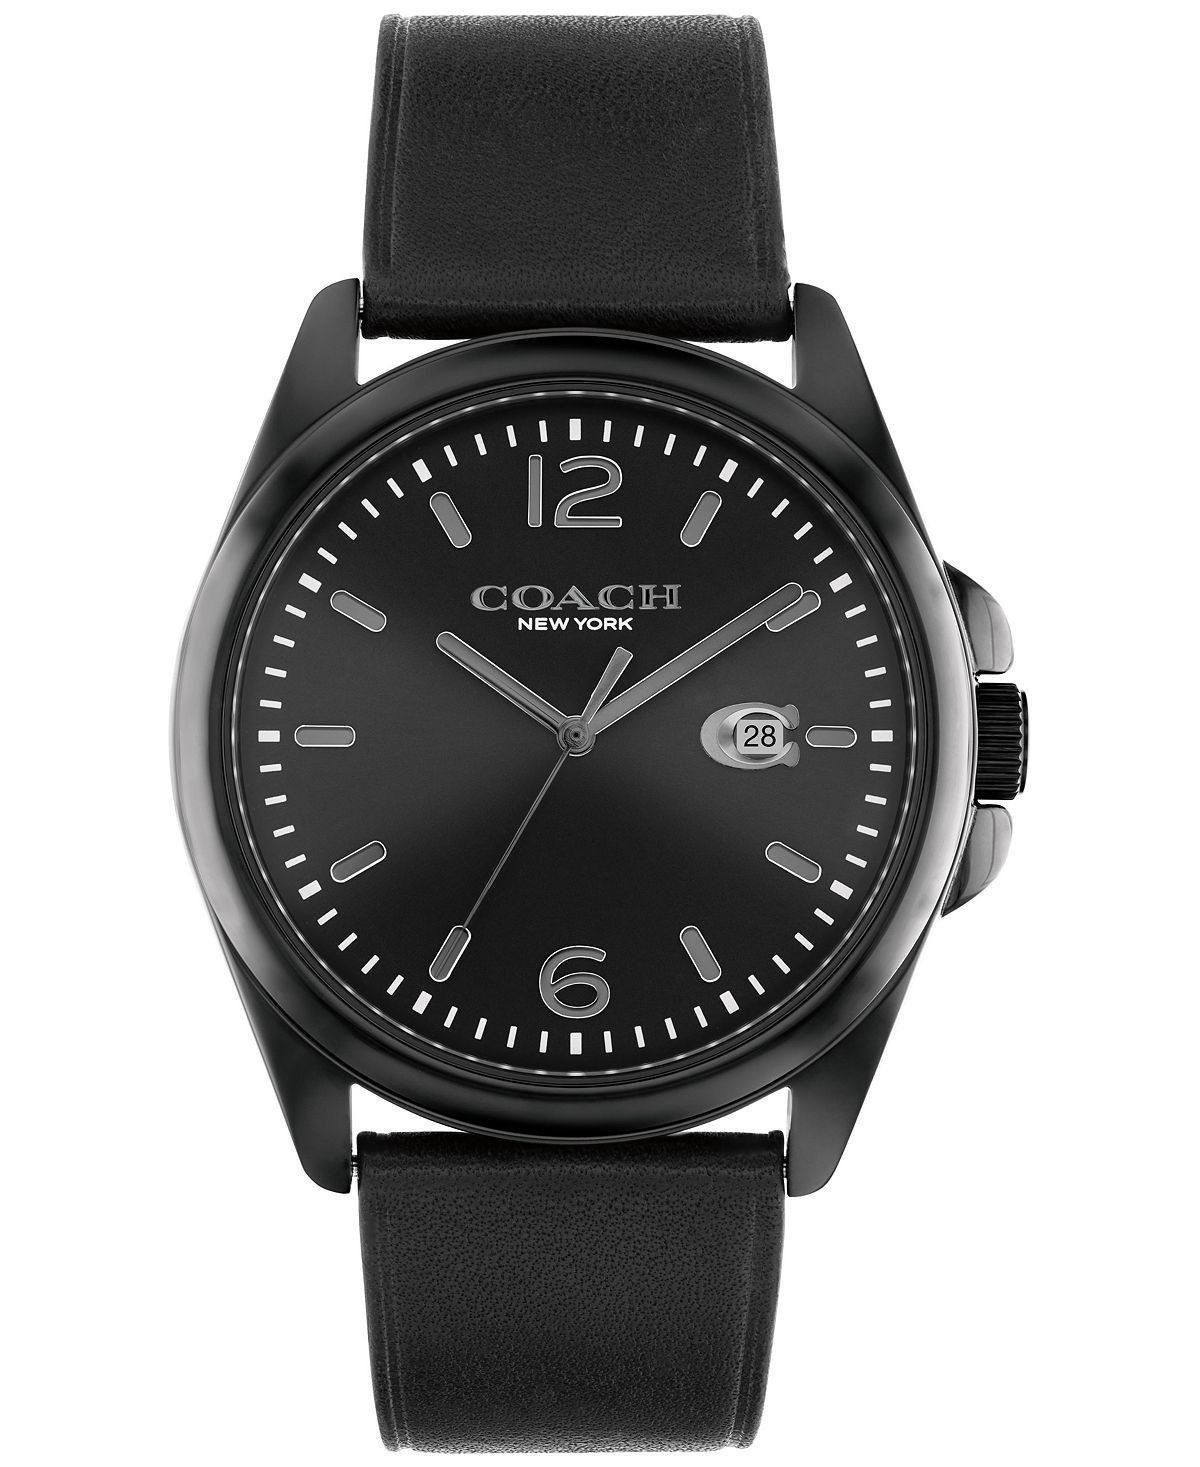 Мужские часы greyson с черным кожаным ремешком 41 мм COACH, черный цена и фото